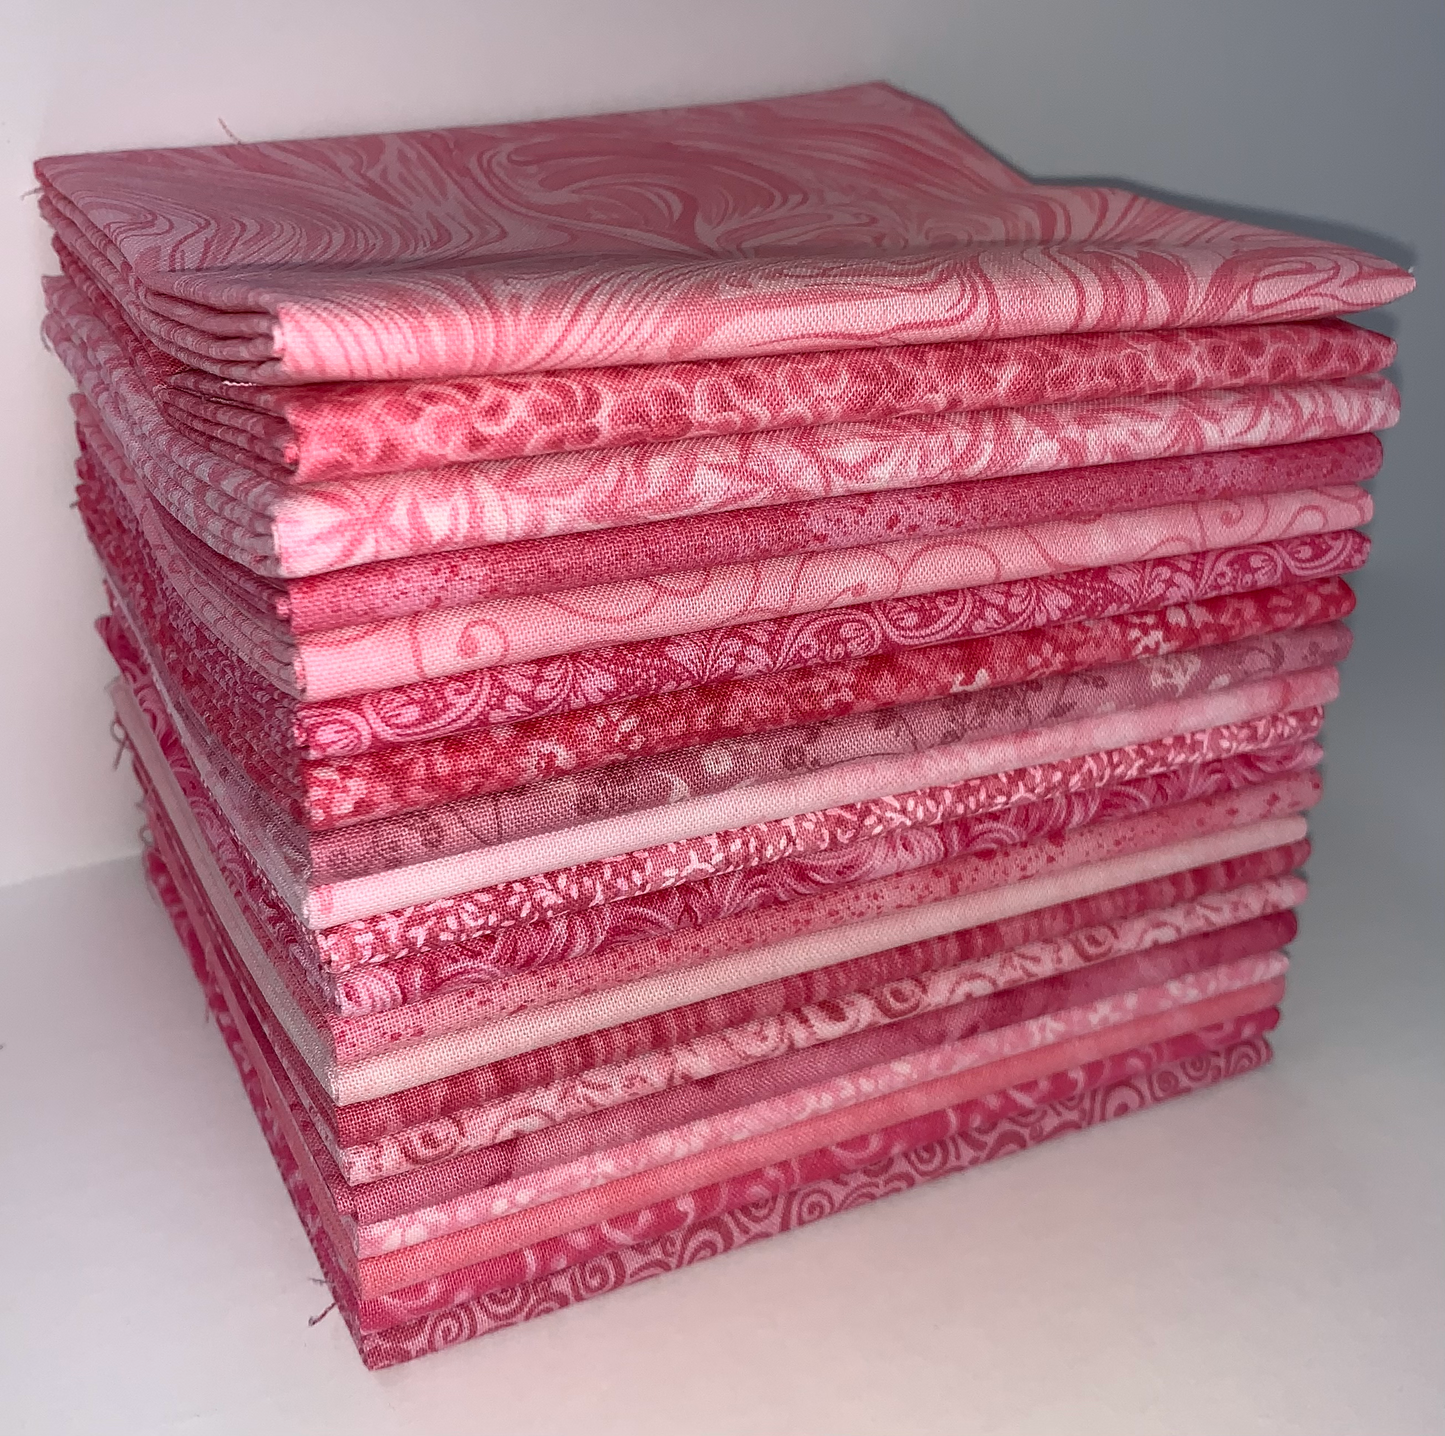 Pink Taffy Fat Quarter Bundle - 20 Fabrics, 20 Total Fat Quarters